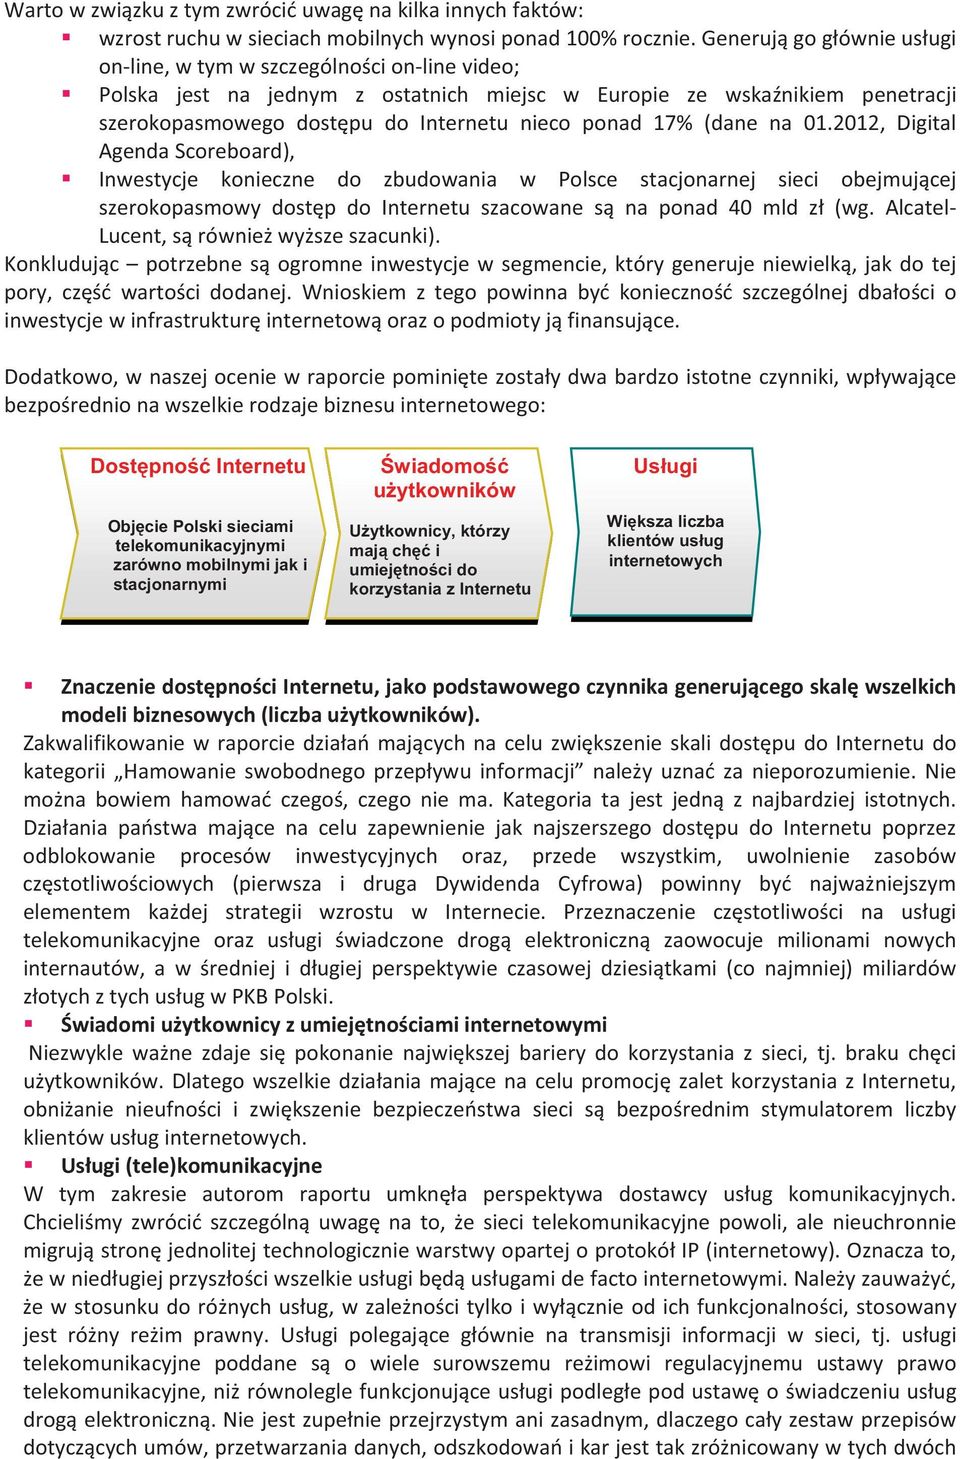 2012, Digital AgendaScoreboard), Inwestycje konieczne do zbudowania w Polsce stacjonarnej sieci obejmujcej szerokopasmowydostpdointernetuszacowanesnaponad40mldz(wg.